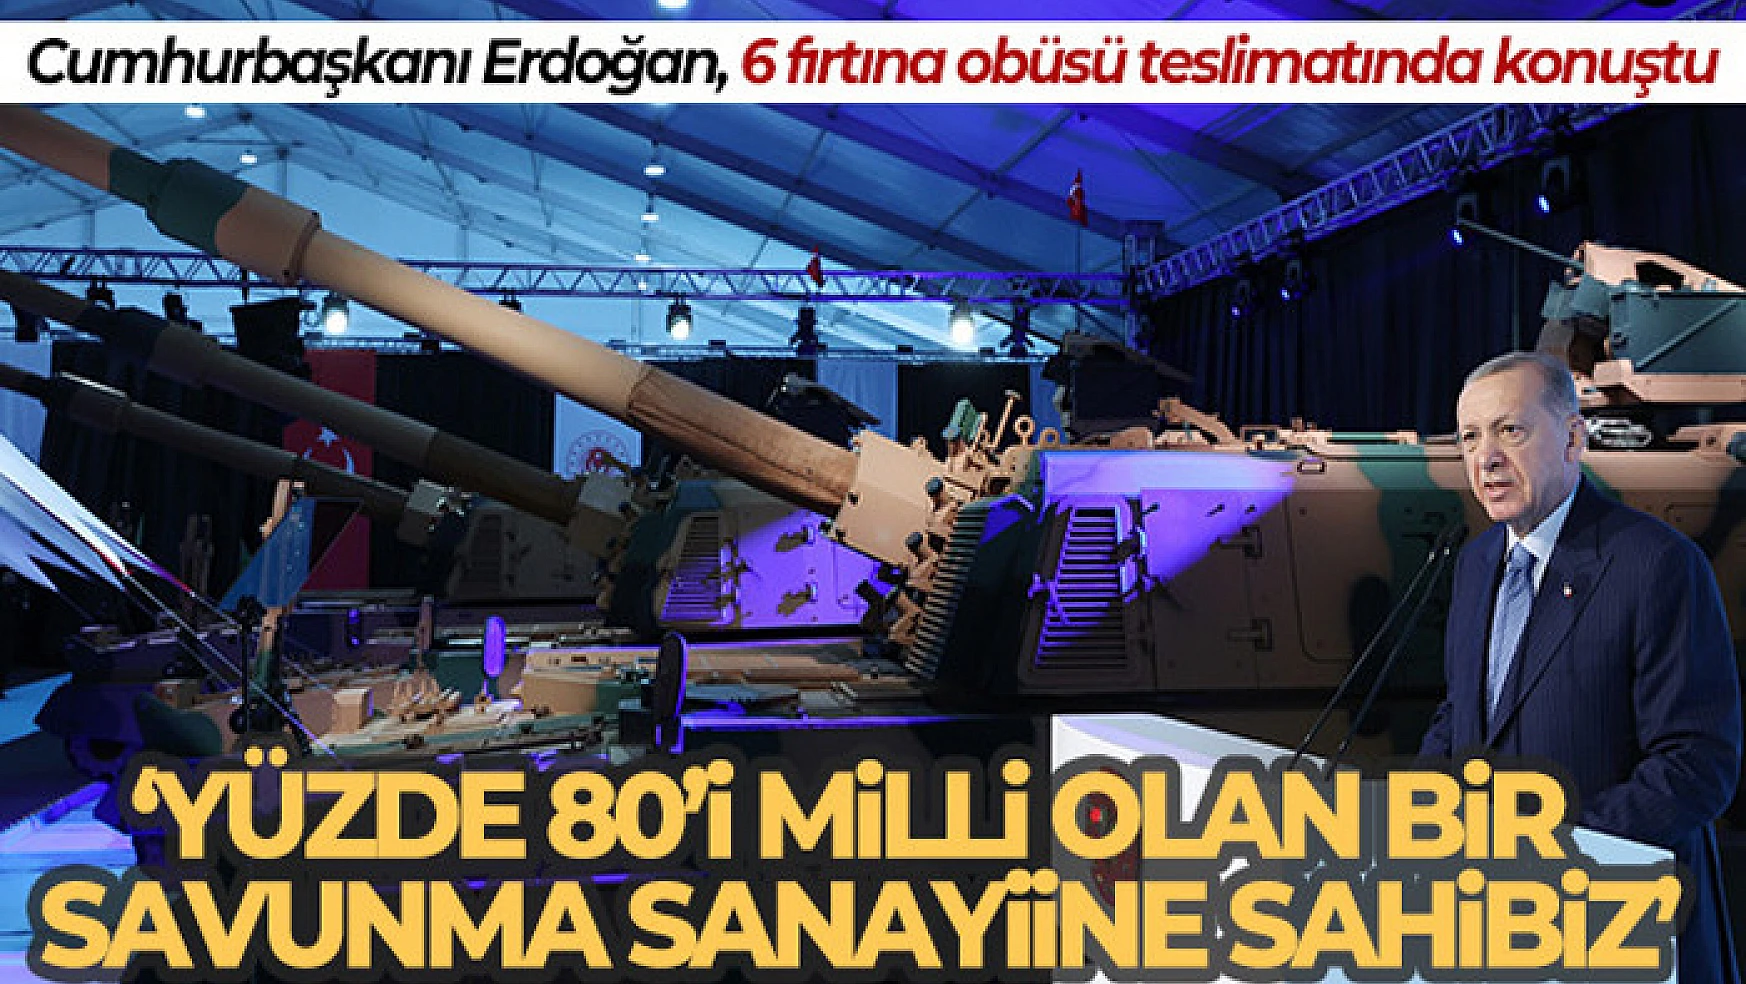 Cumhurbaşkanı Erdoğan: 'Arifiye Ana Bakım Fabrikası, ordumuzun ihtiyaçlarını karşılamayı sürdürüyor'